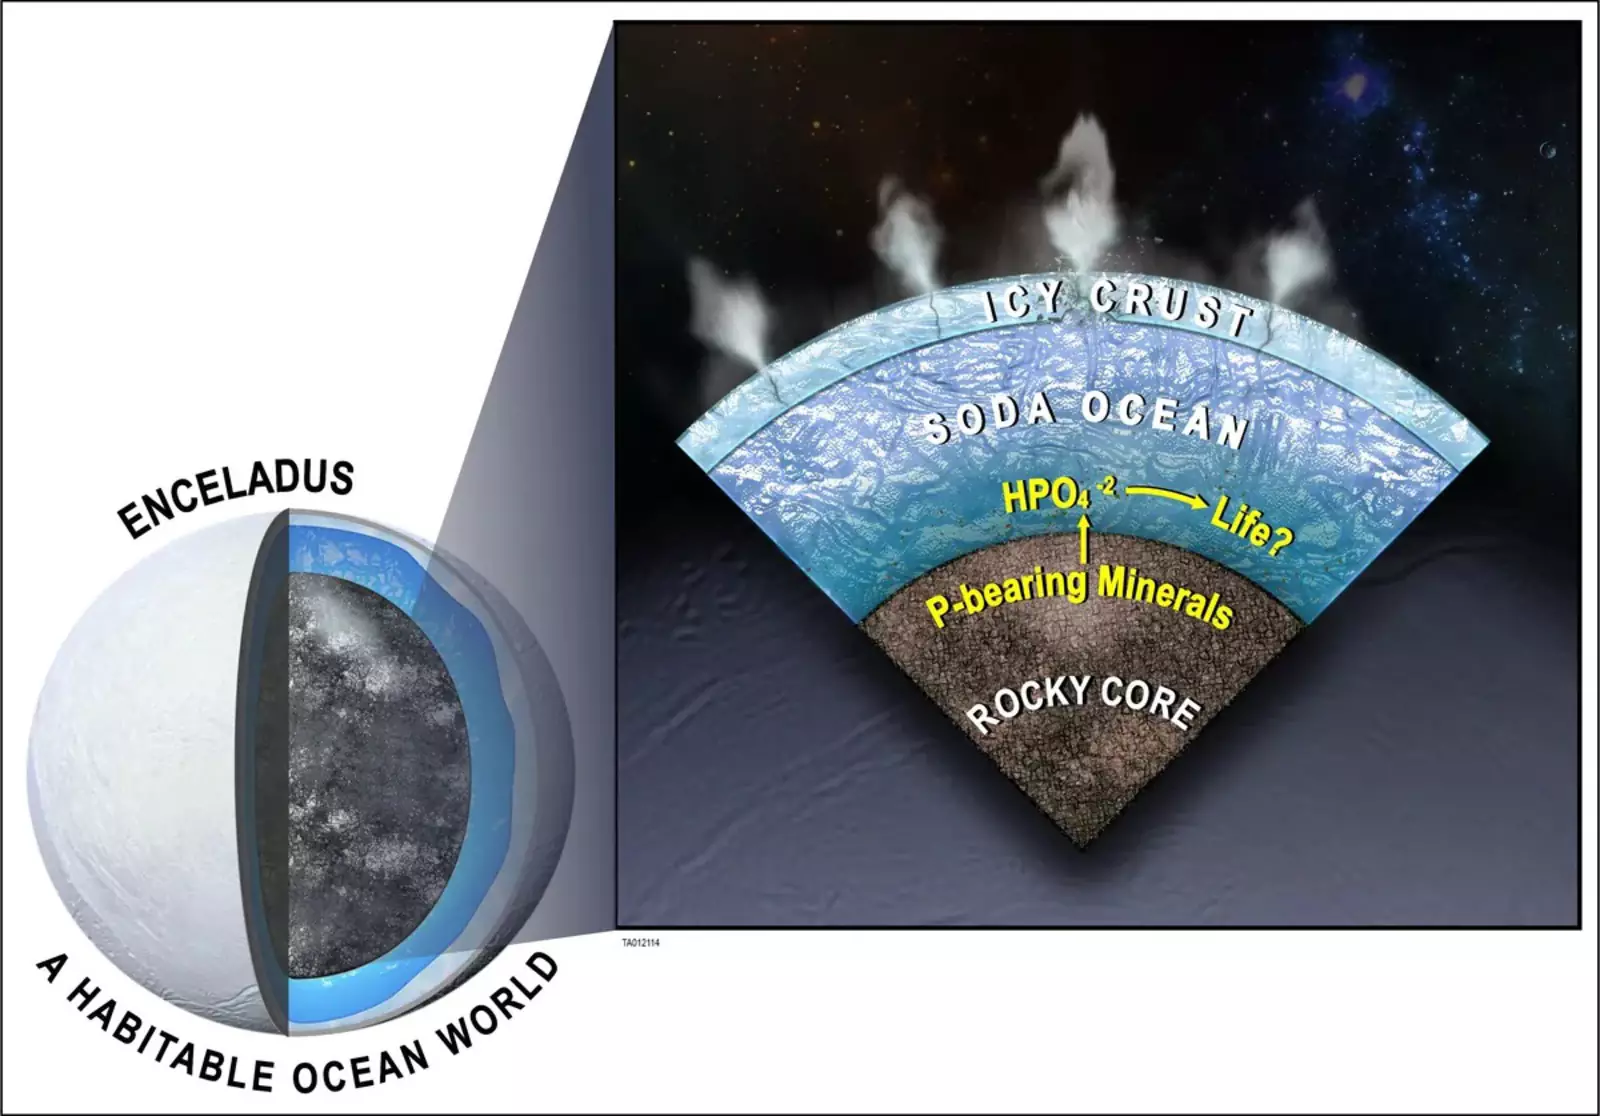 Фосфор из ядра Энцелада должен раствориться в его океане, чтобы поддерживать жизнь.